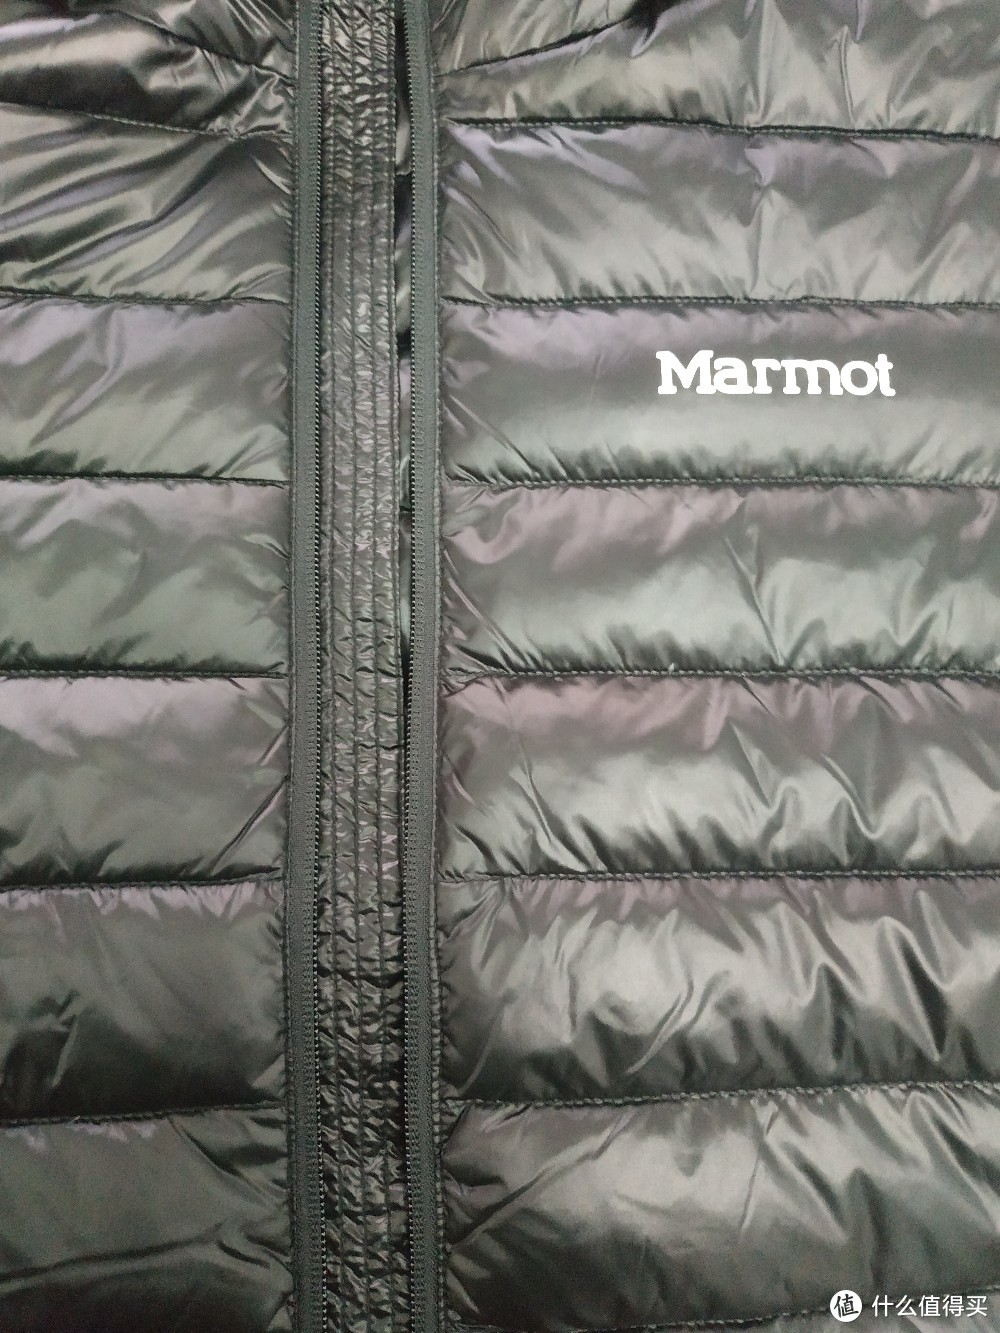 评论过千的 Marmot V79405 羽绒服随意评测